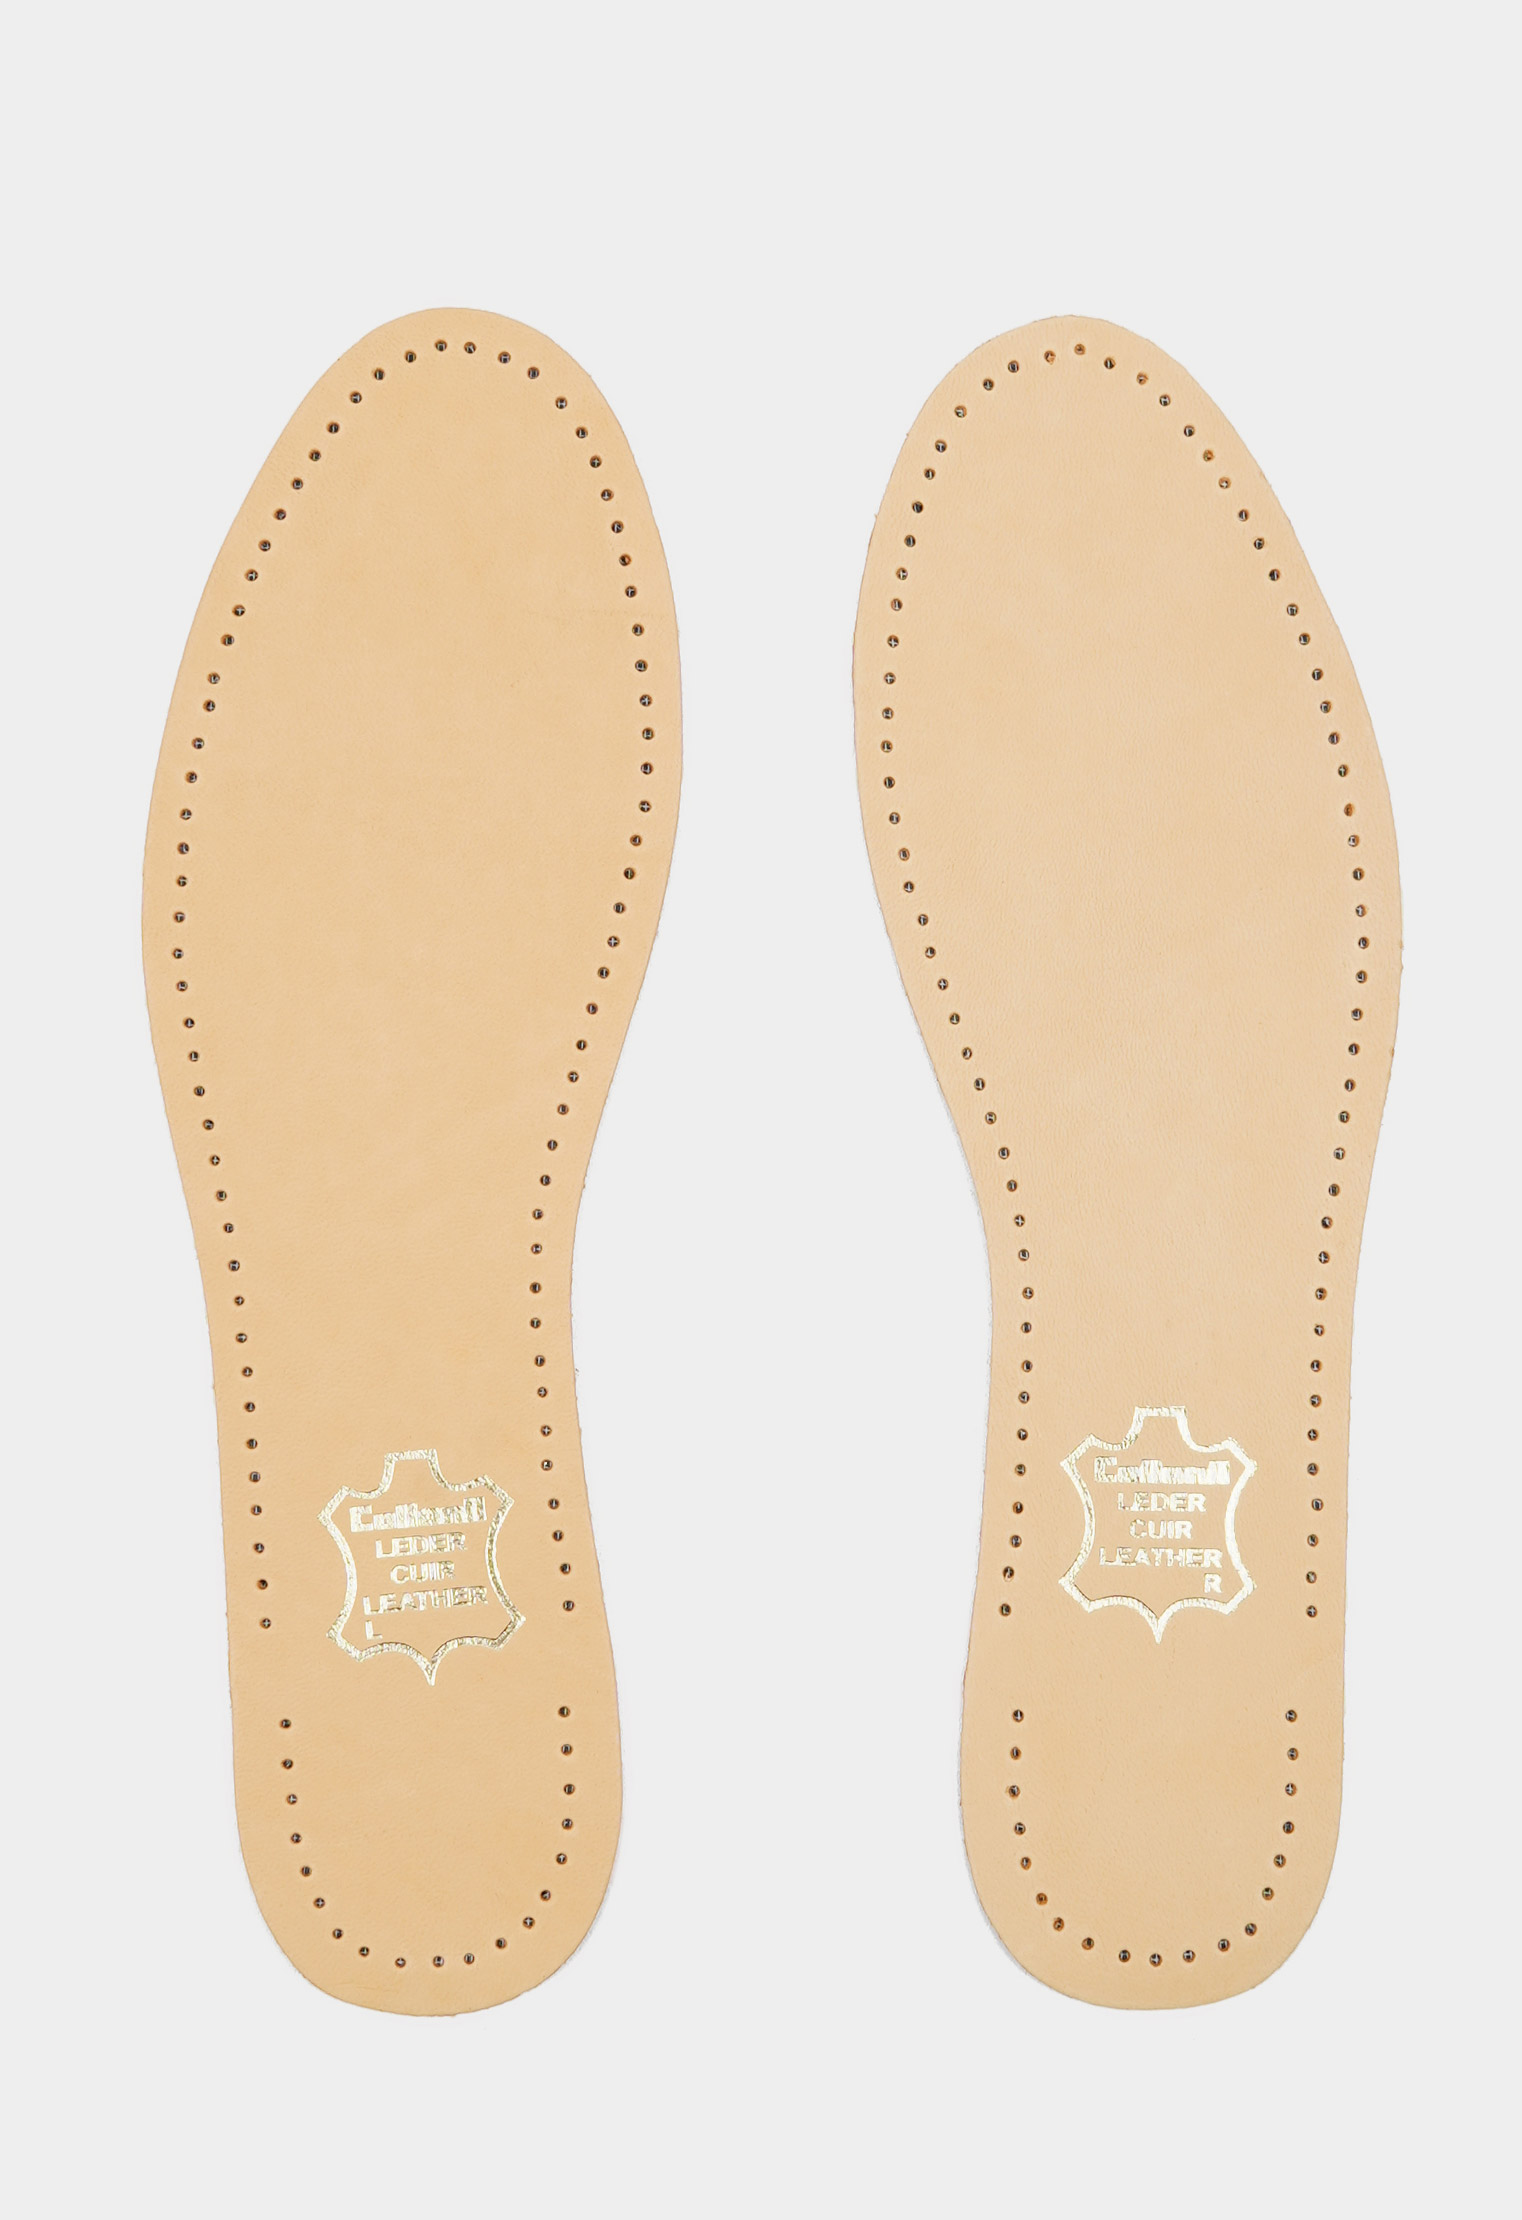 Уход за обувью 20-1641 Стельки Luxor /р.40/ (Размер: 40) уход за обувью 20 8958 tarrago стельки leder foam натуральная кожа пеноматериал р 39 40